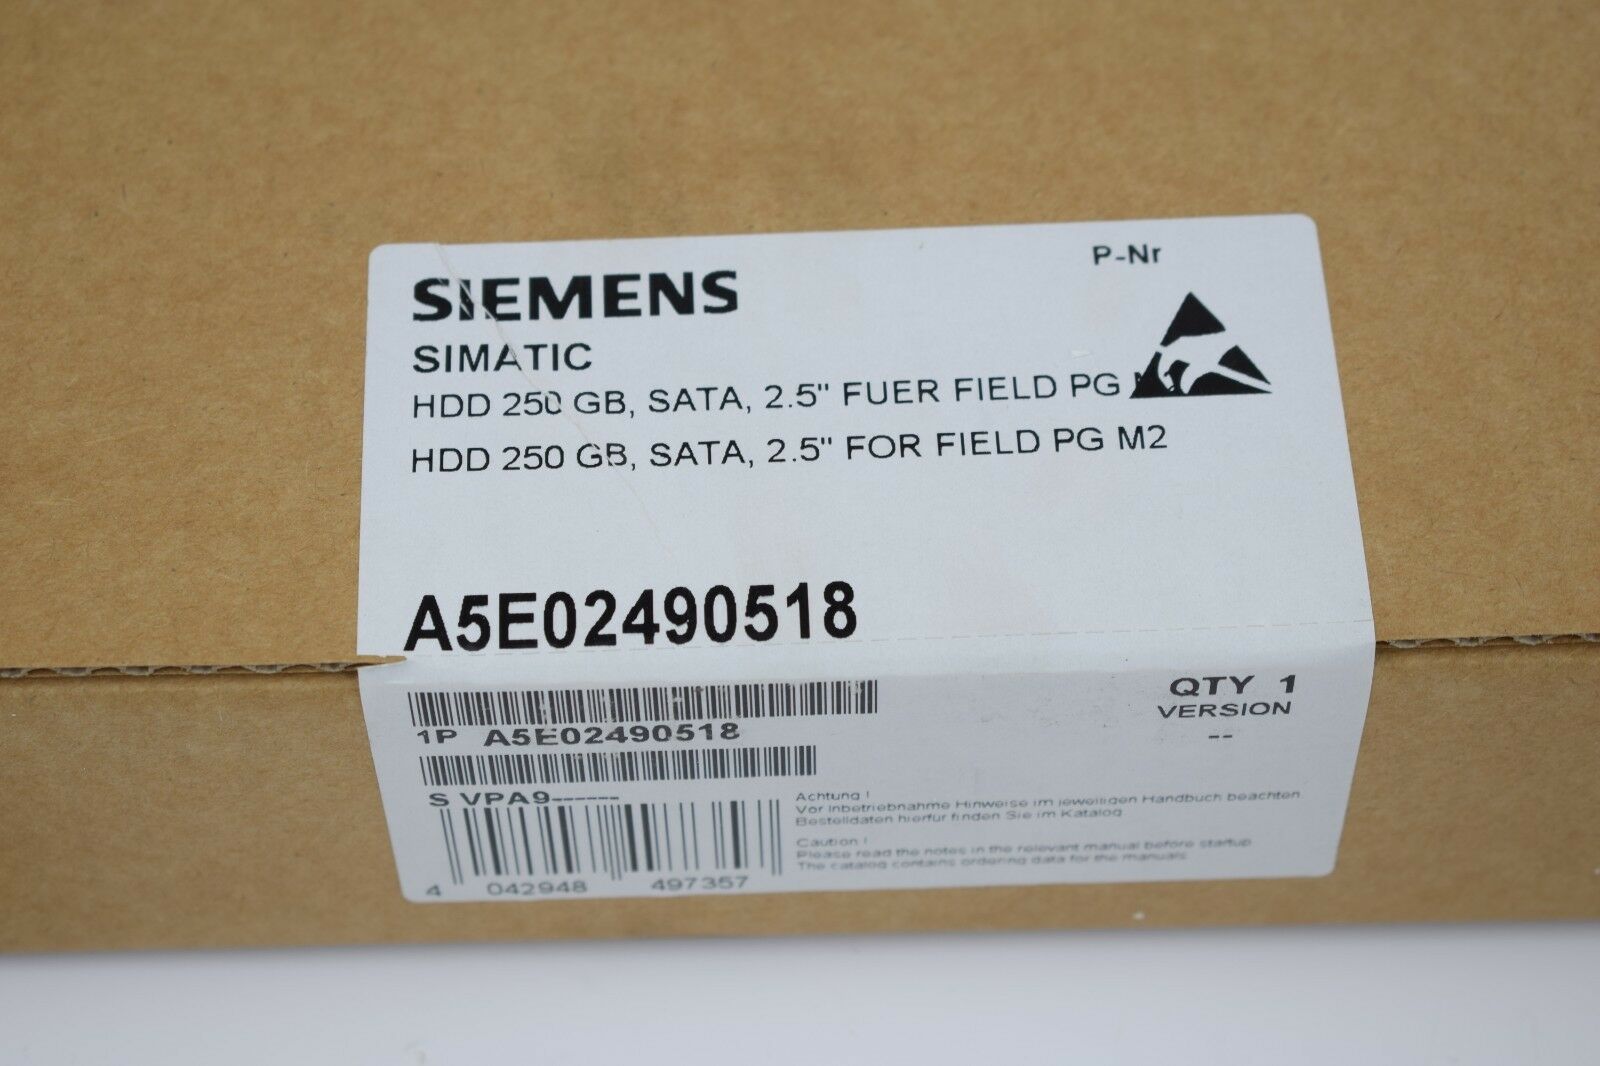 Siemens simatic A5E02490518 HDD 250 BG, SATA, 2.5''